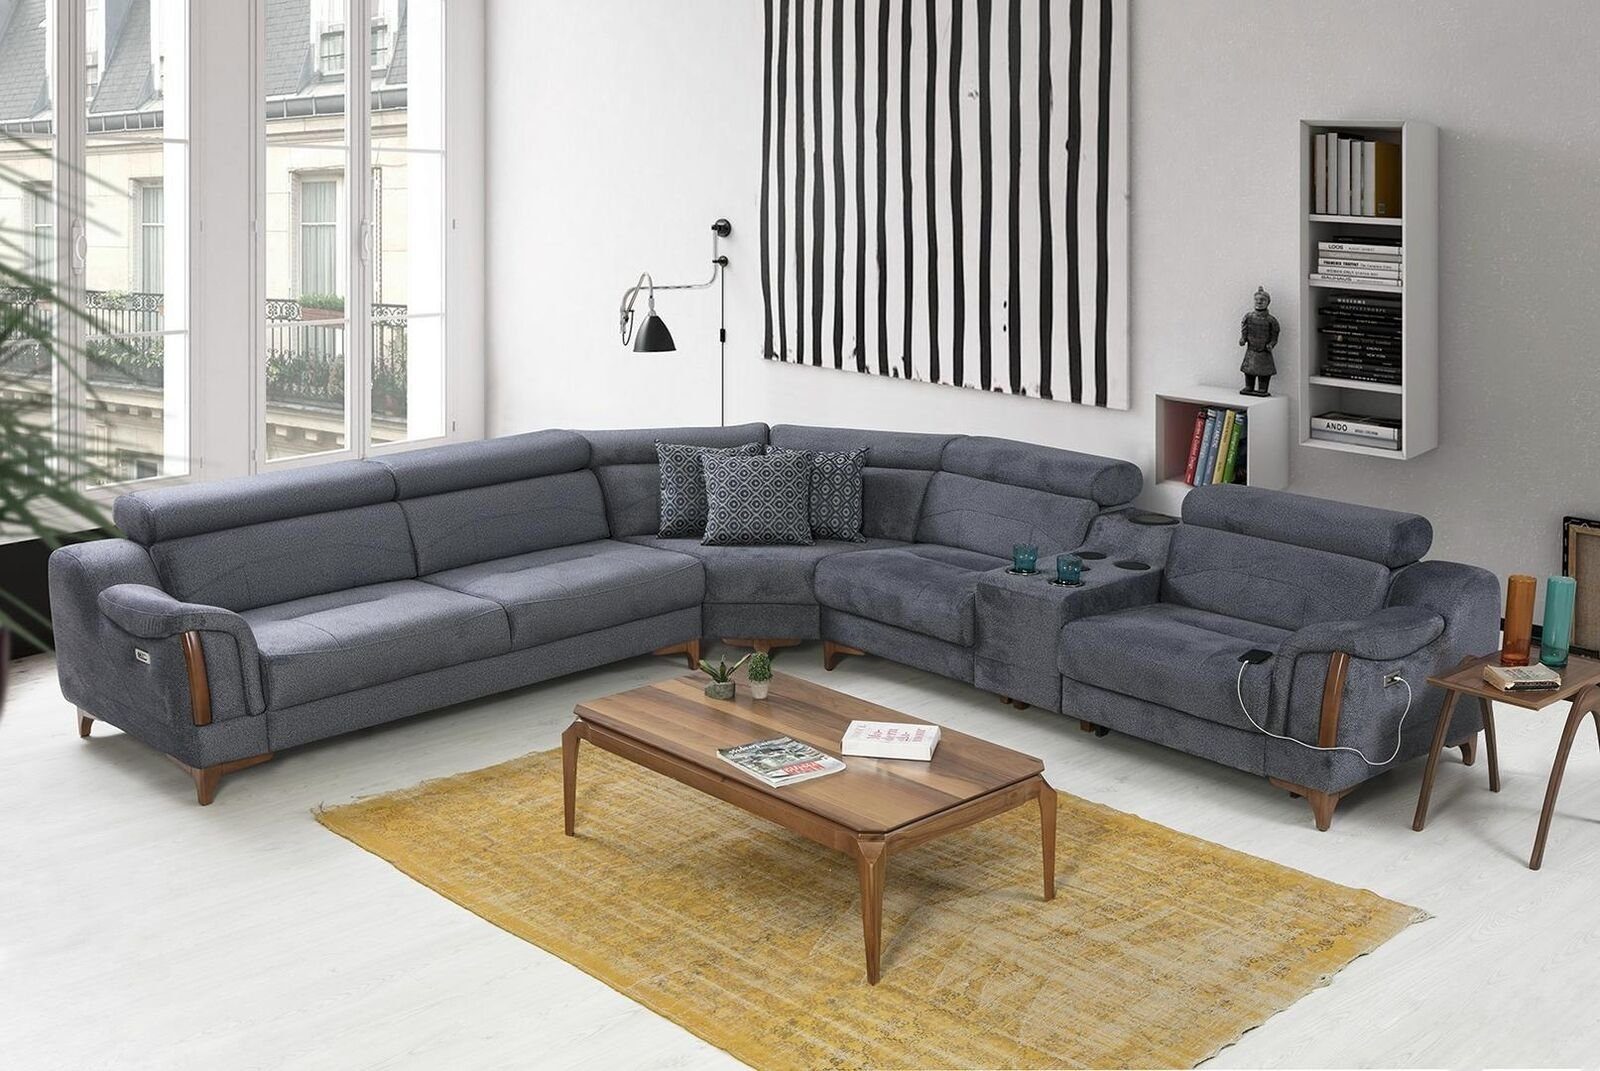 JVmoebel Ecksofa Grau Ecksofa L-Form Modern Teile, Möbel, in 5 Europa Design Sofa Wohnzimmer Made Luxus